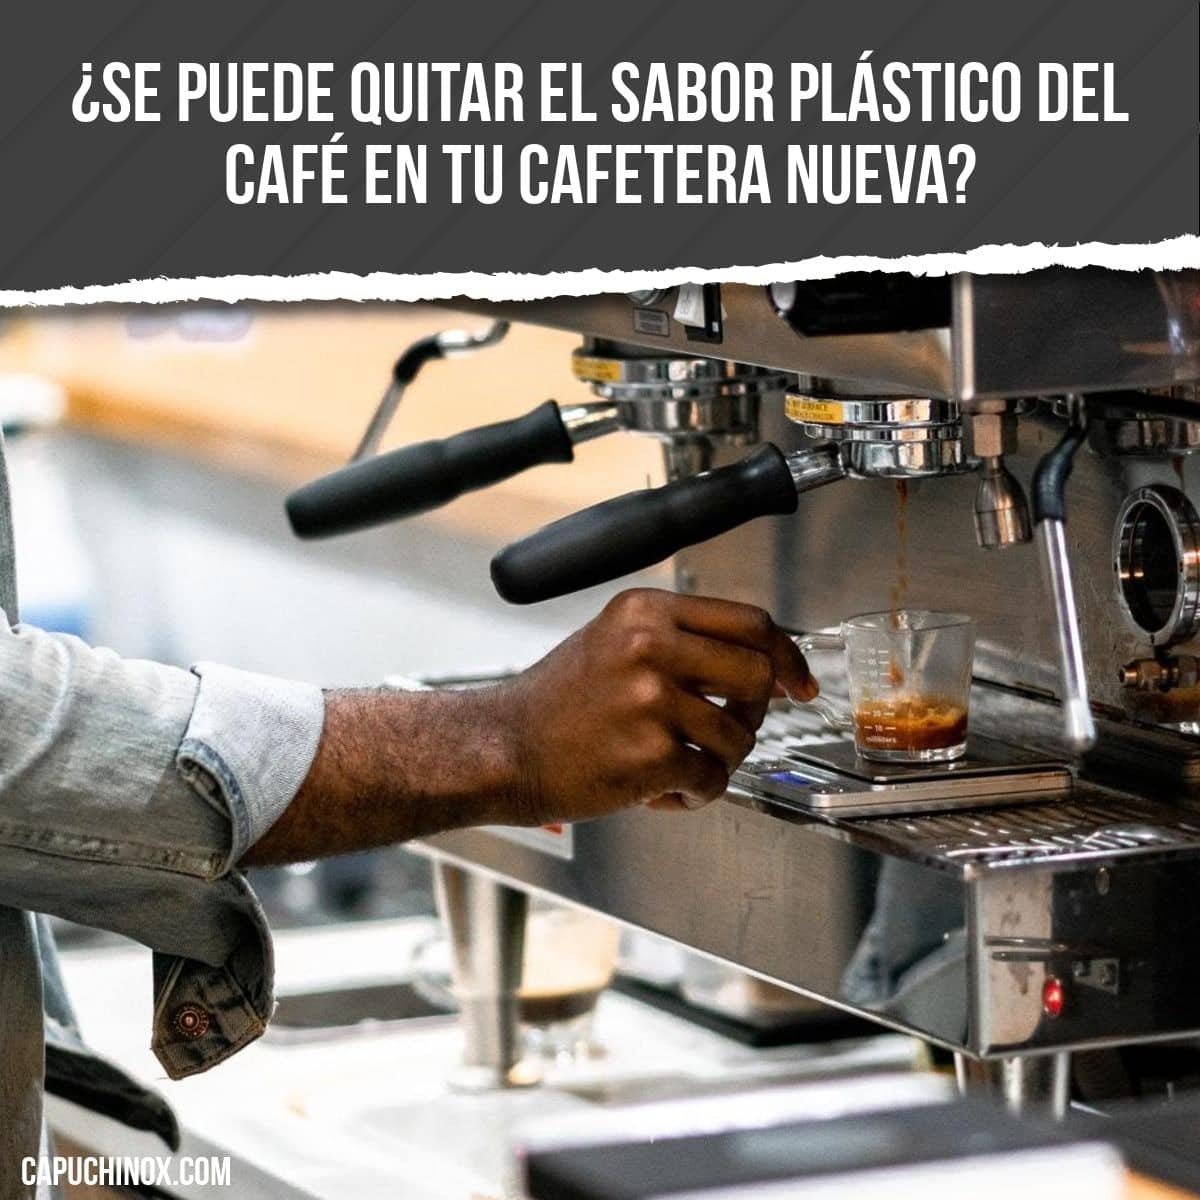 ¿Se puede quitar el sabor plástico del café en tu cafetera nueva?